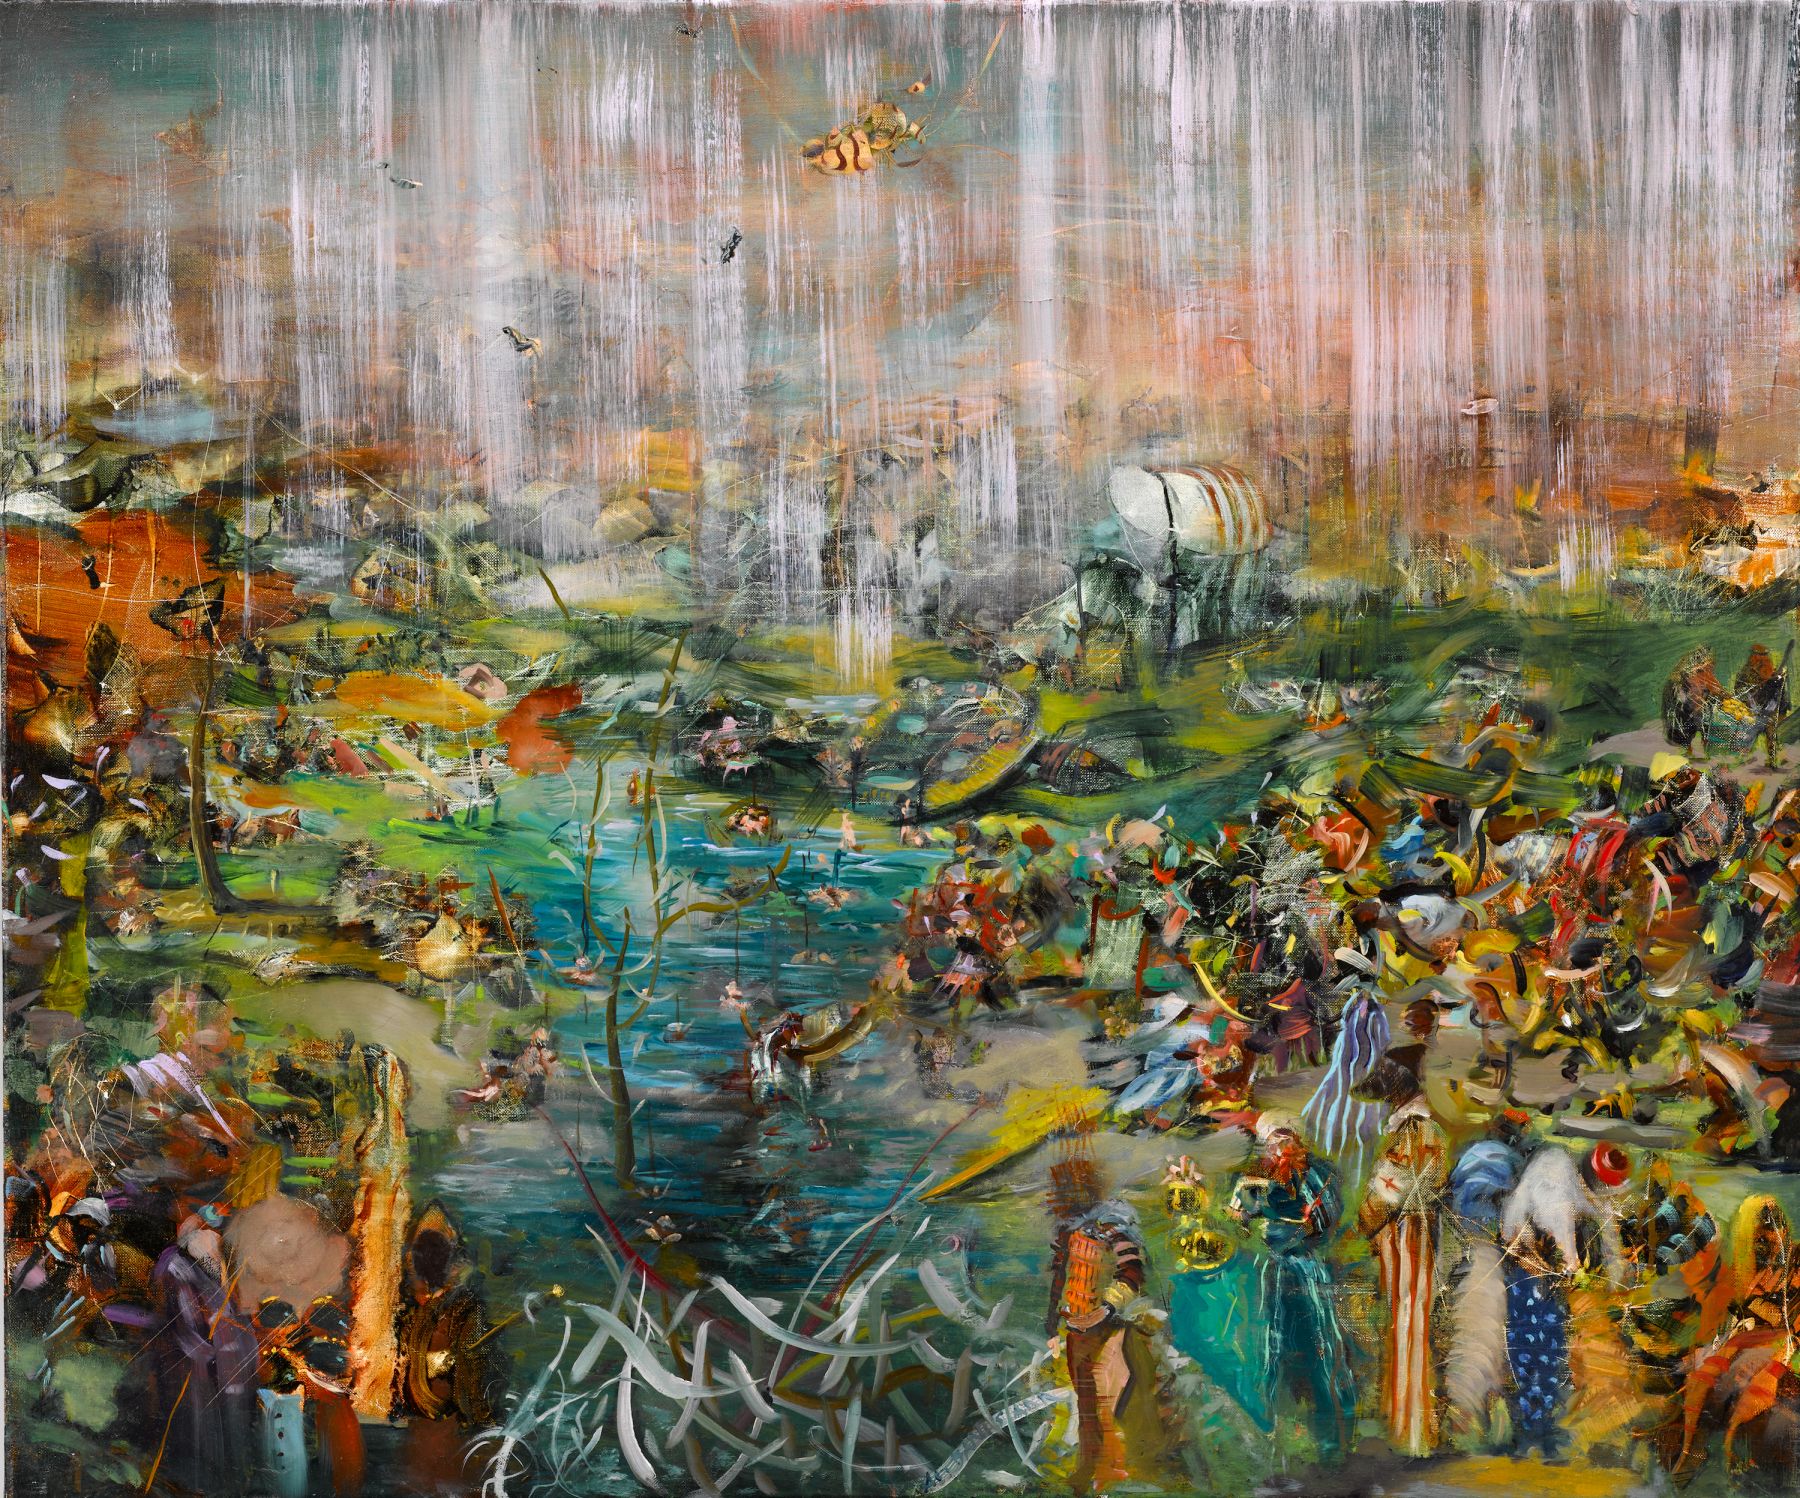 Fishing for Souls (Рыбалка для душ), 2009. Али Банисадр (Ali Banisadr) - современный иранский художник. Современная живопись